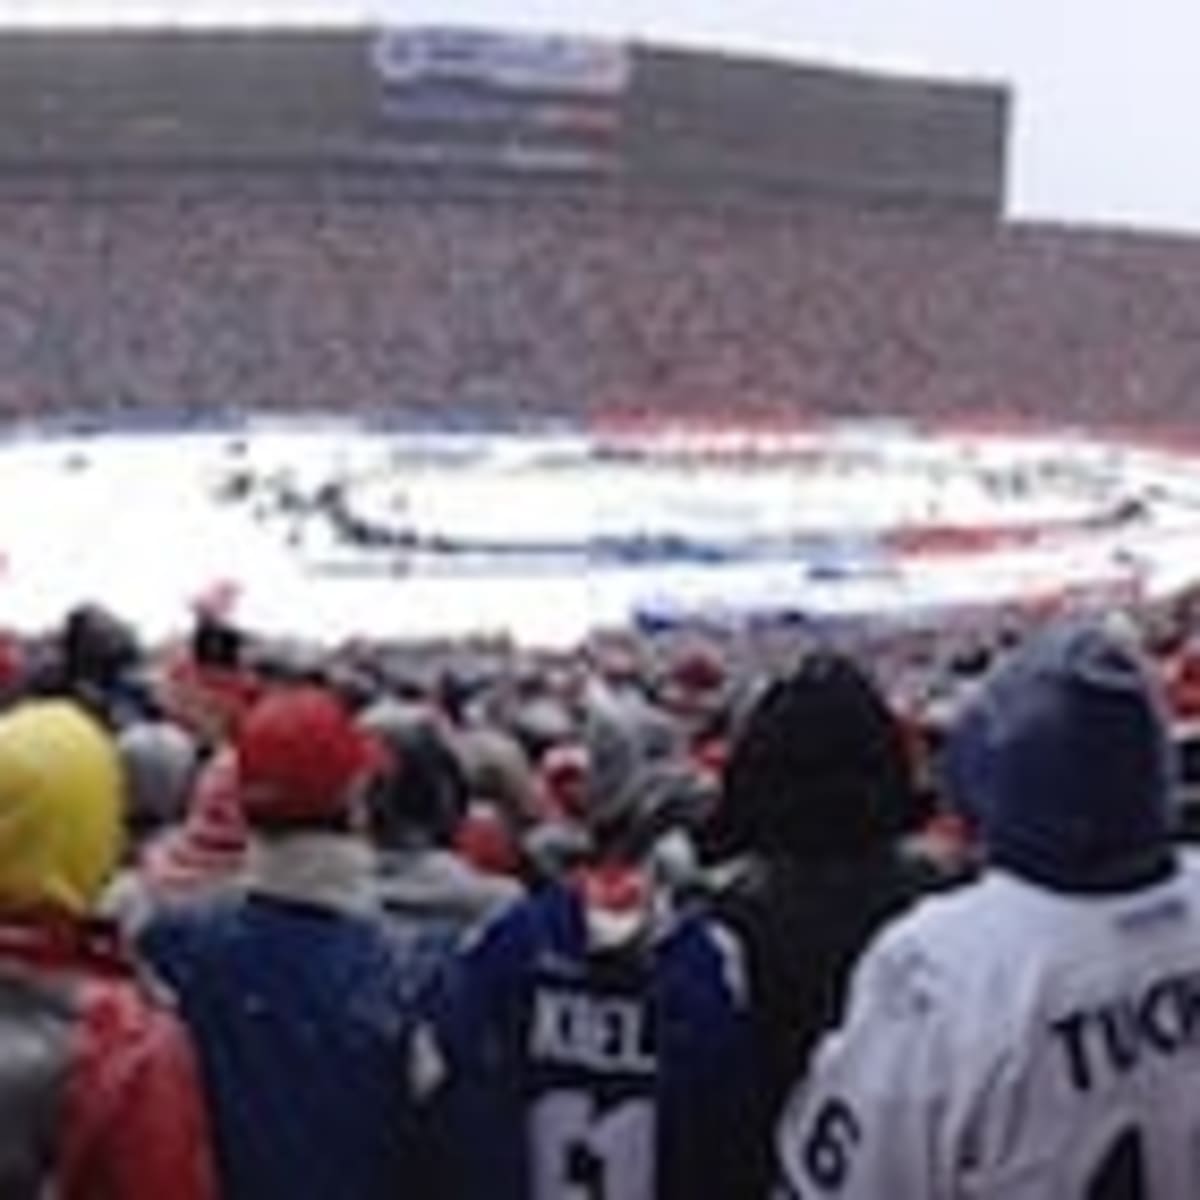 Recap of the 'biggest and best' NHL Winter Classic at Michigan Stadium 